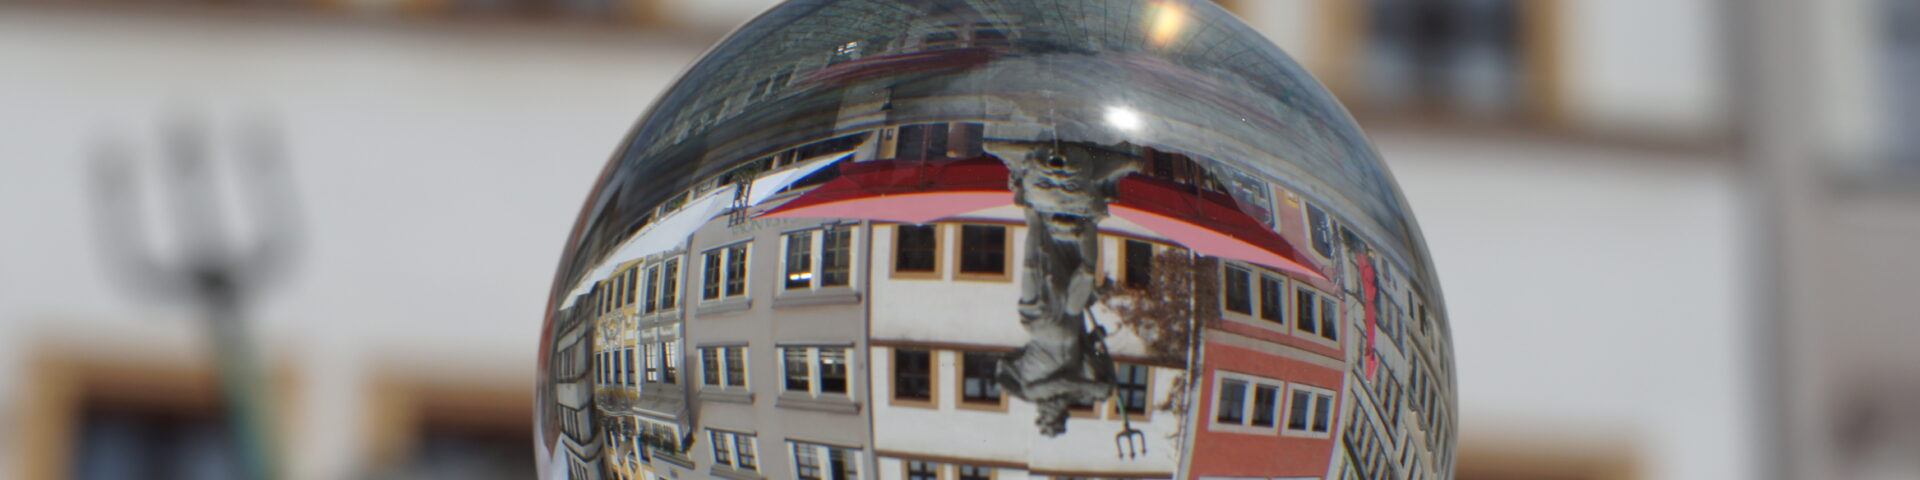 Der Görlitzer Neptunbrunnen spiegelt sich in einer Glaskugel